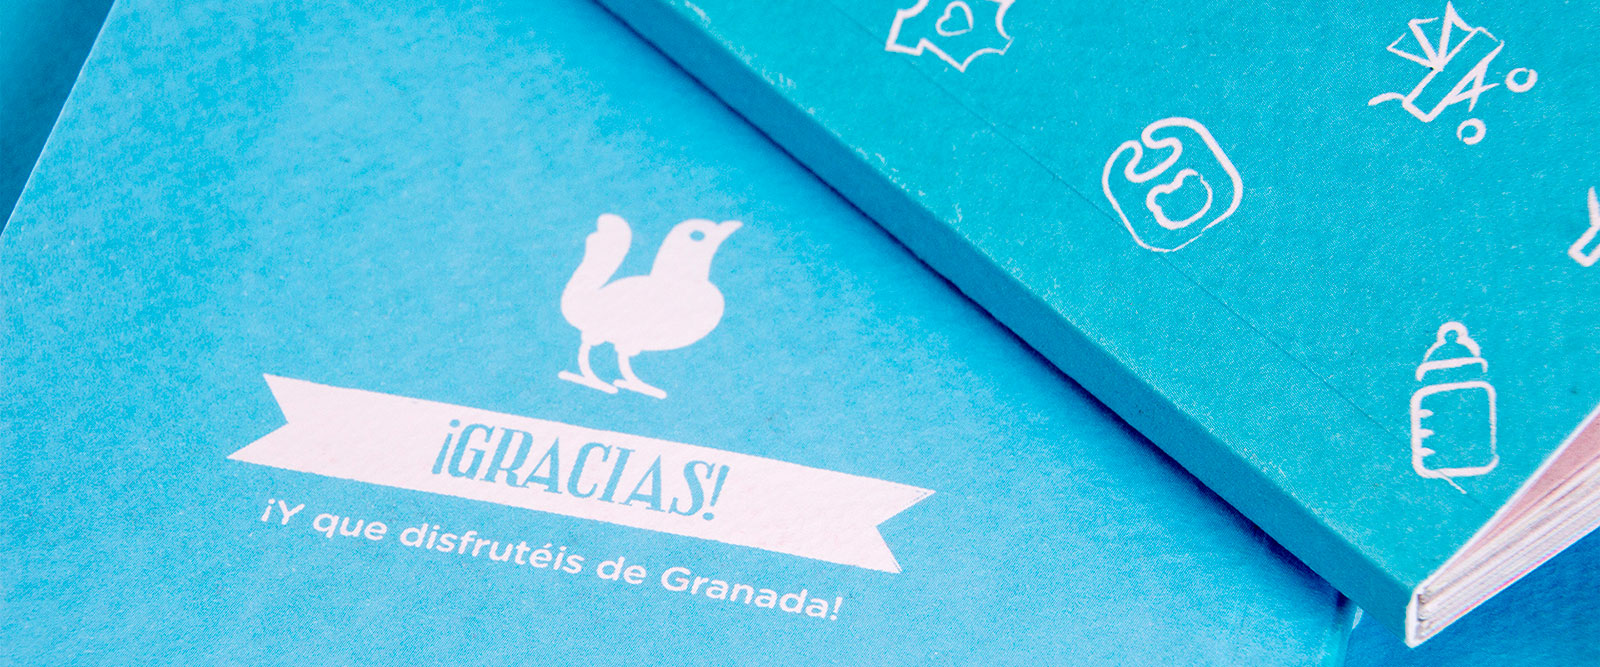 Little Granada, Branding y diseño gráfico